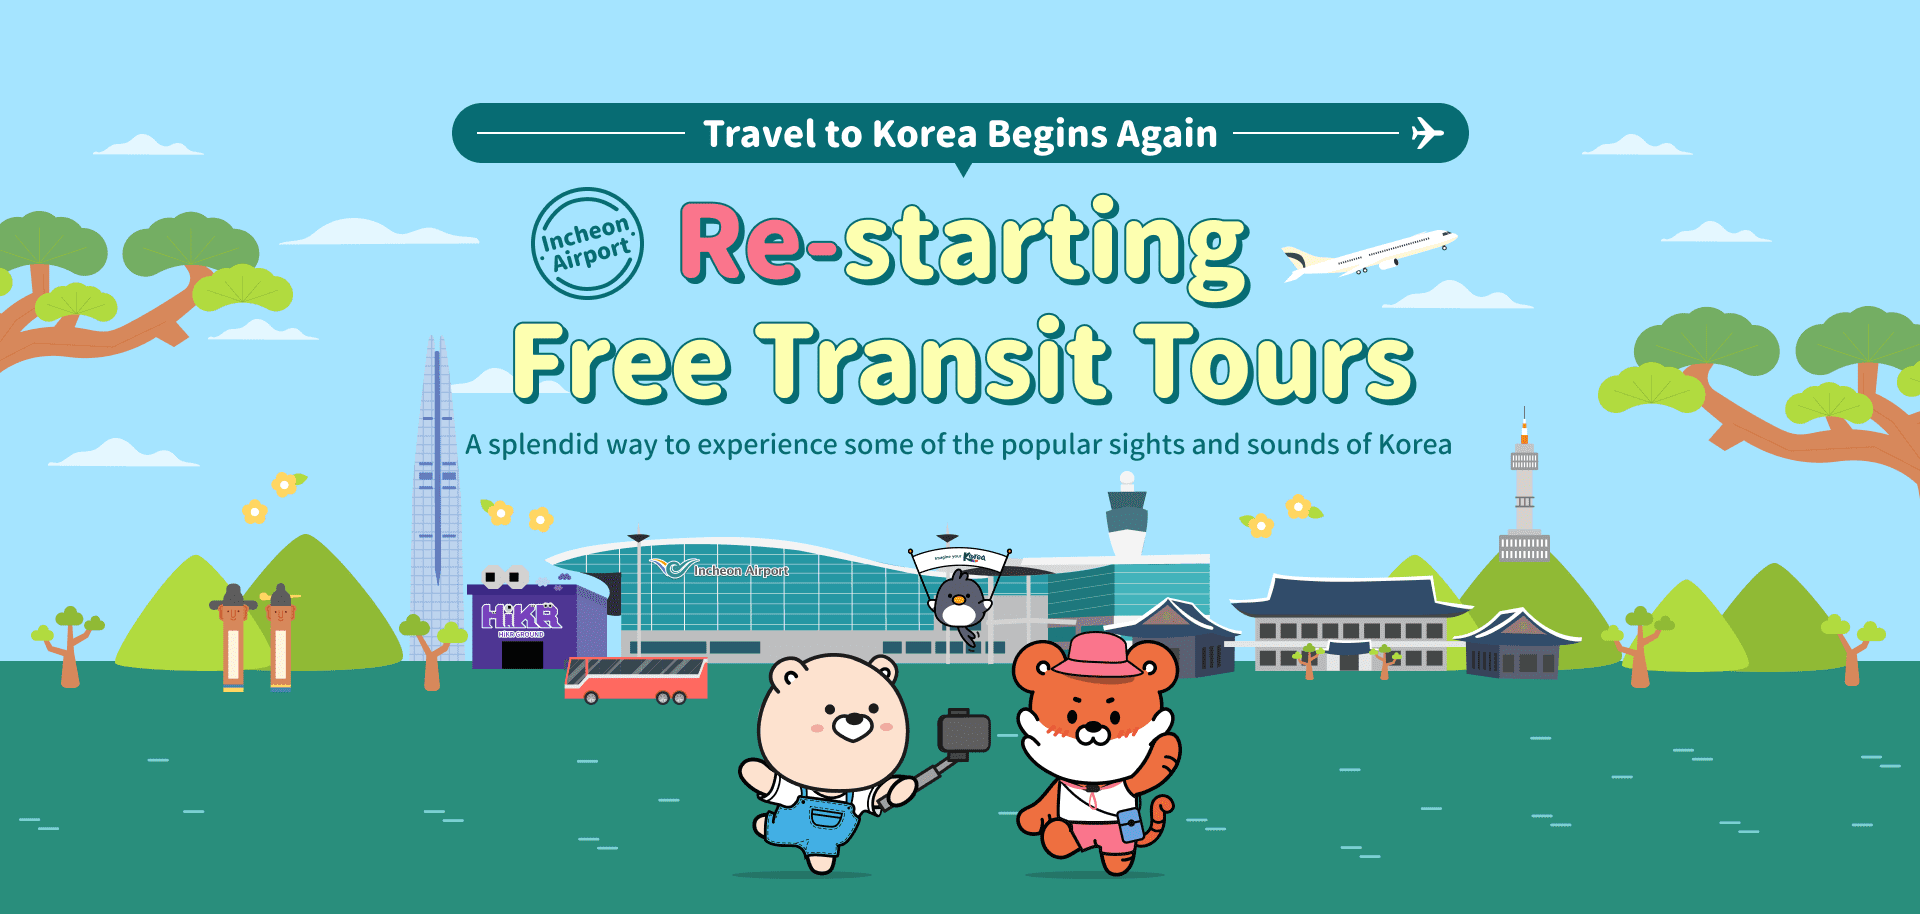 Free Transit Tours Travel to Korea Begins Again Korea Tourism